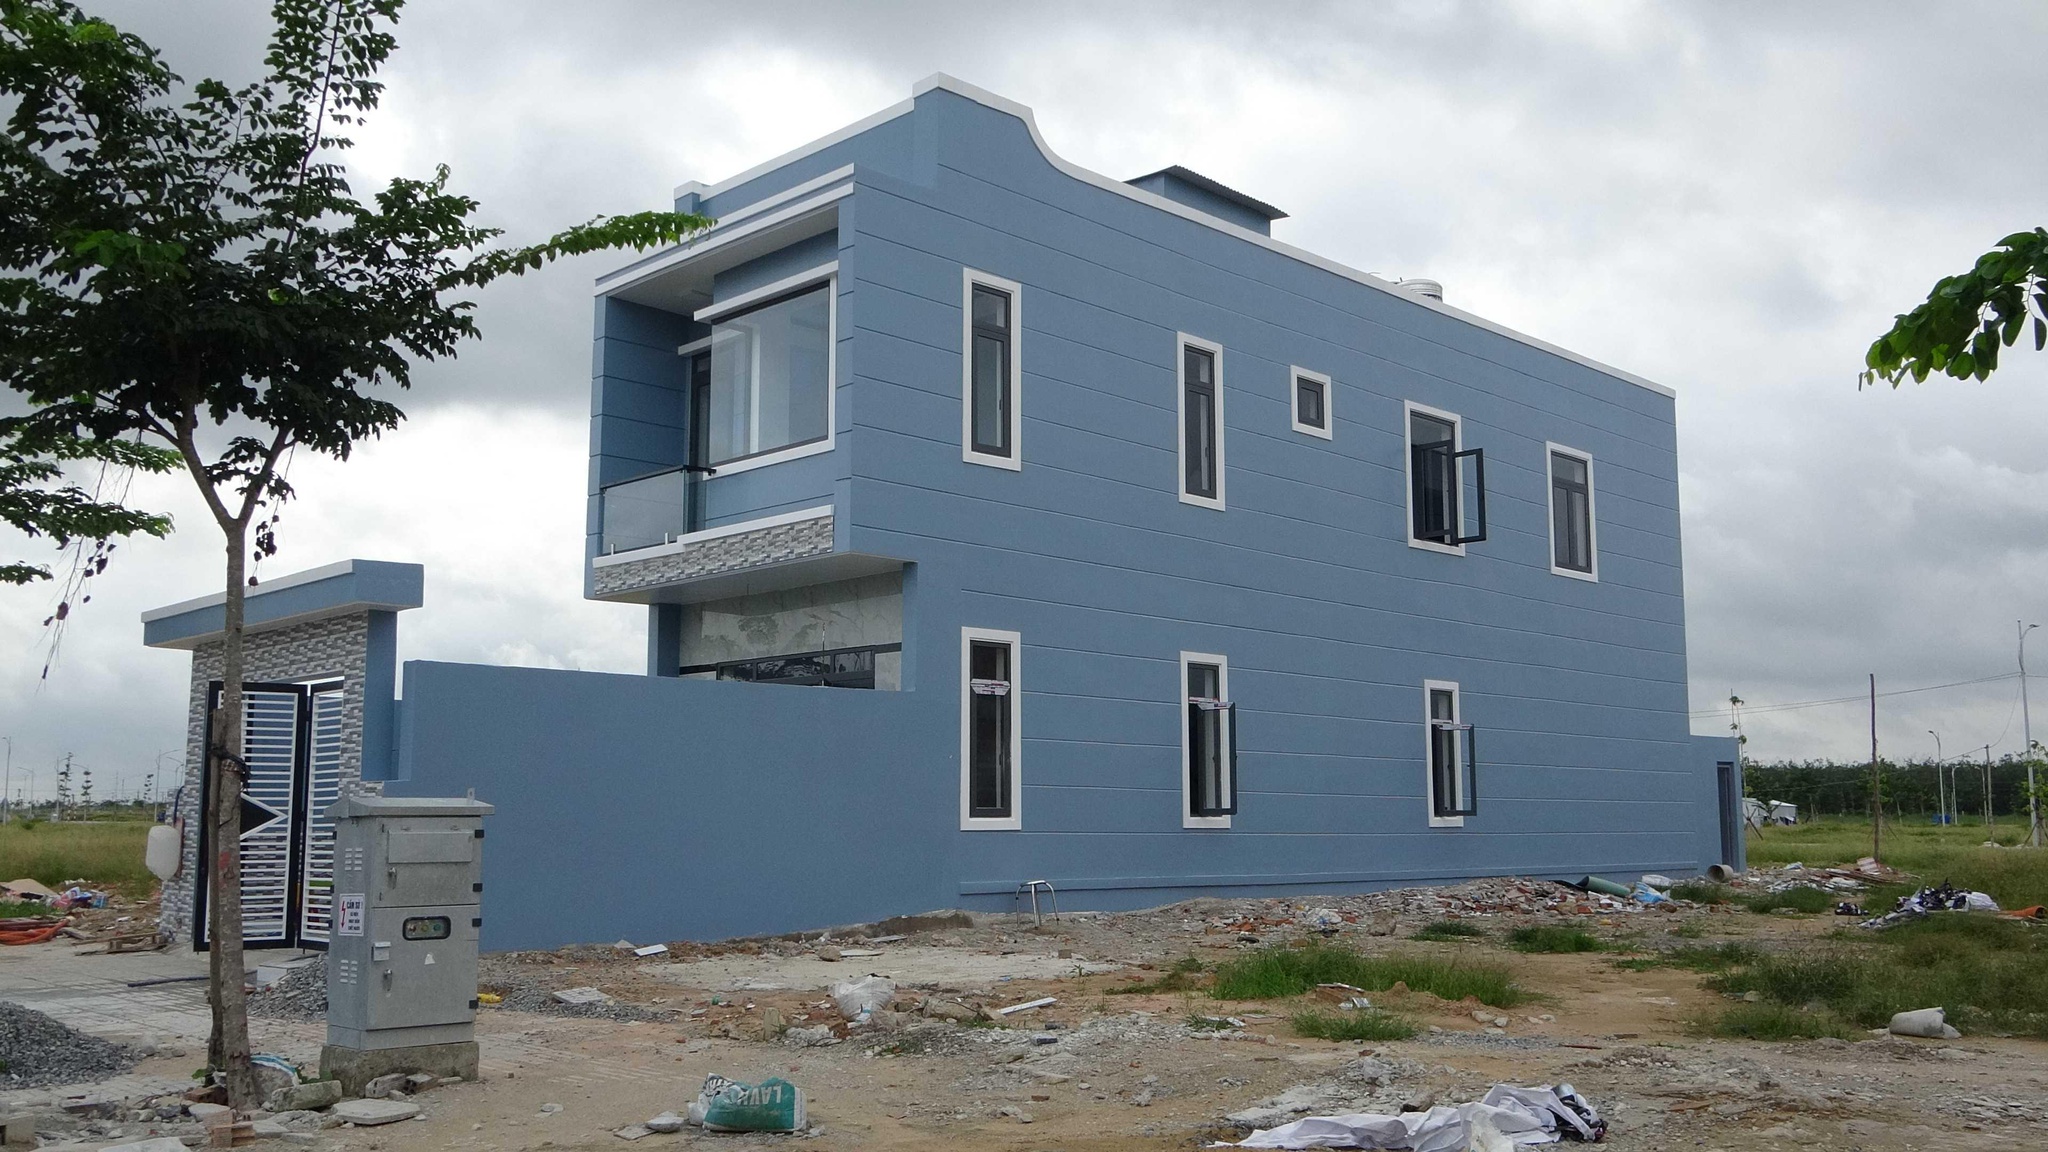 Căn nhà của anh Trương Văn Thành tại Khu Tái Định Cư Lộc An - Bình Sơn đã hoàn thiện 100%. Chỉ còn dọn vào ở bắt đầu một cuộc sống mới đầy đủ hơn.